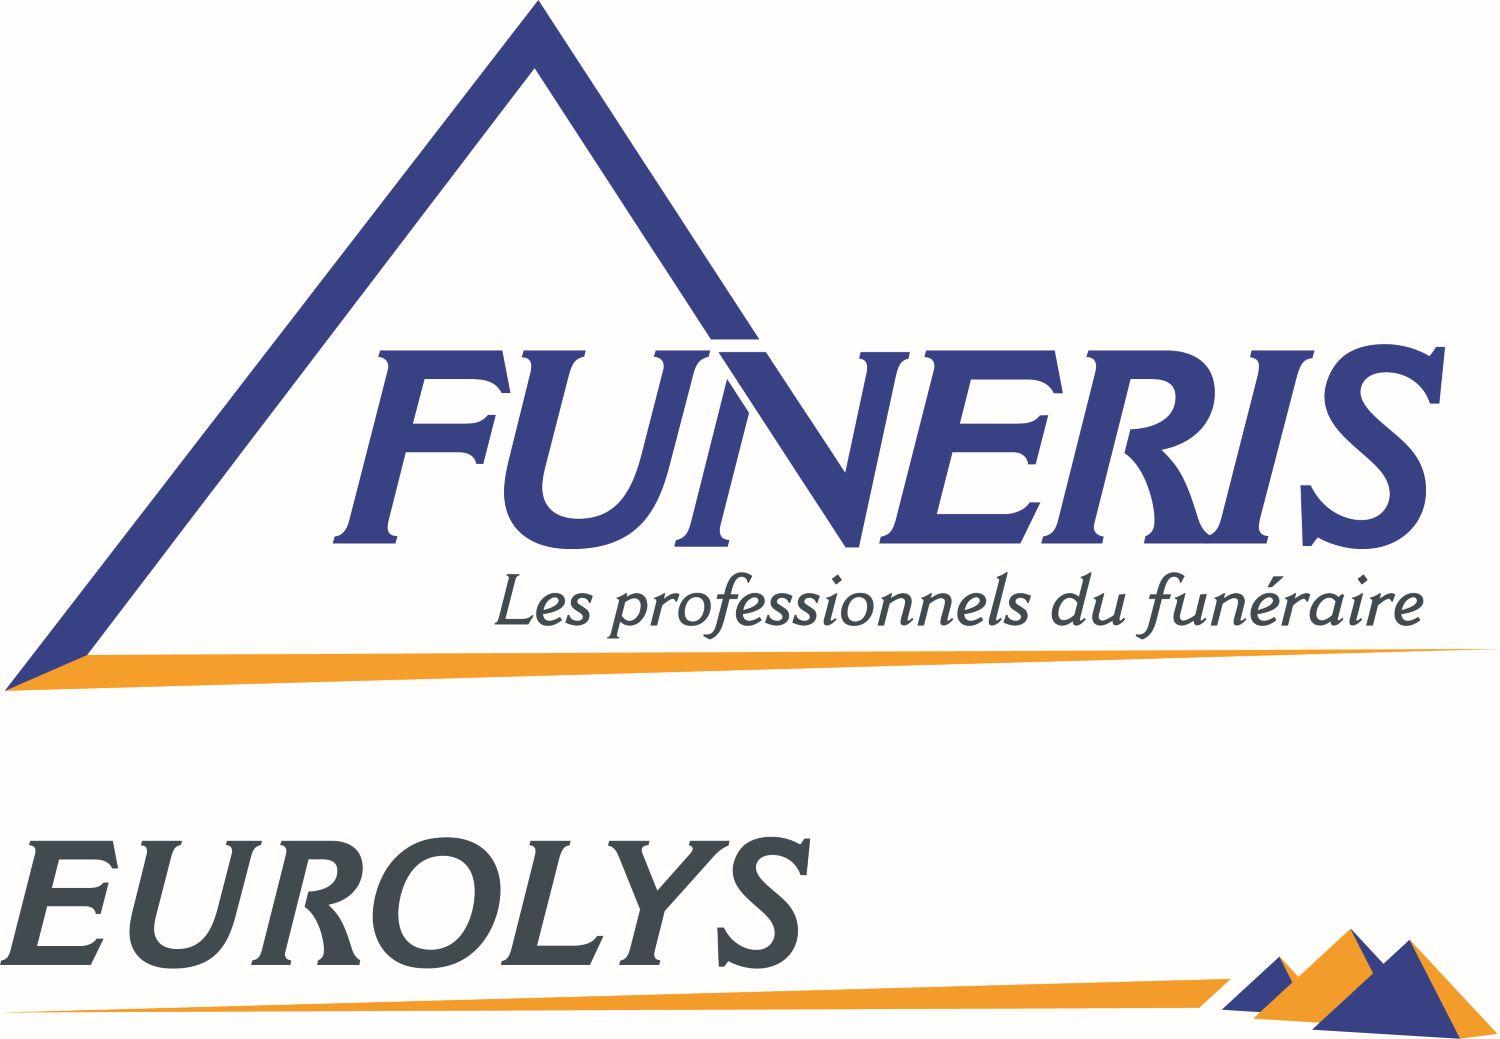 Pompes Funèbres Eurolys pompes funèbres, inhumation et crémation (fournitures)